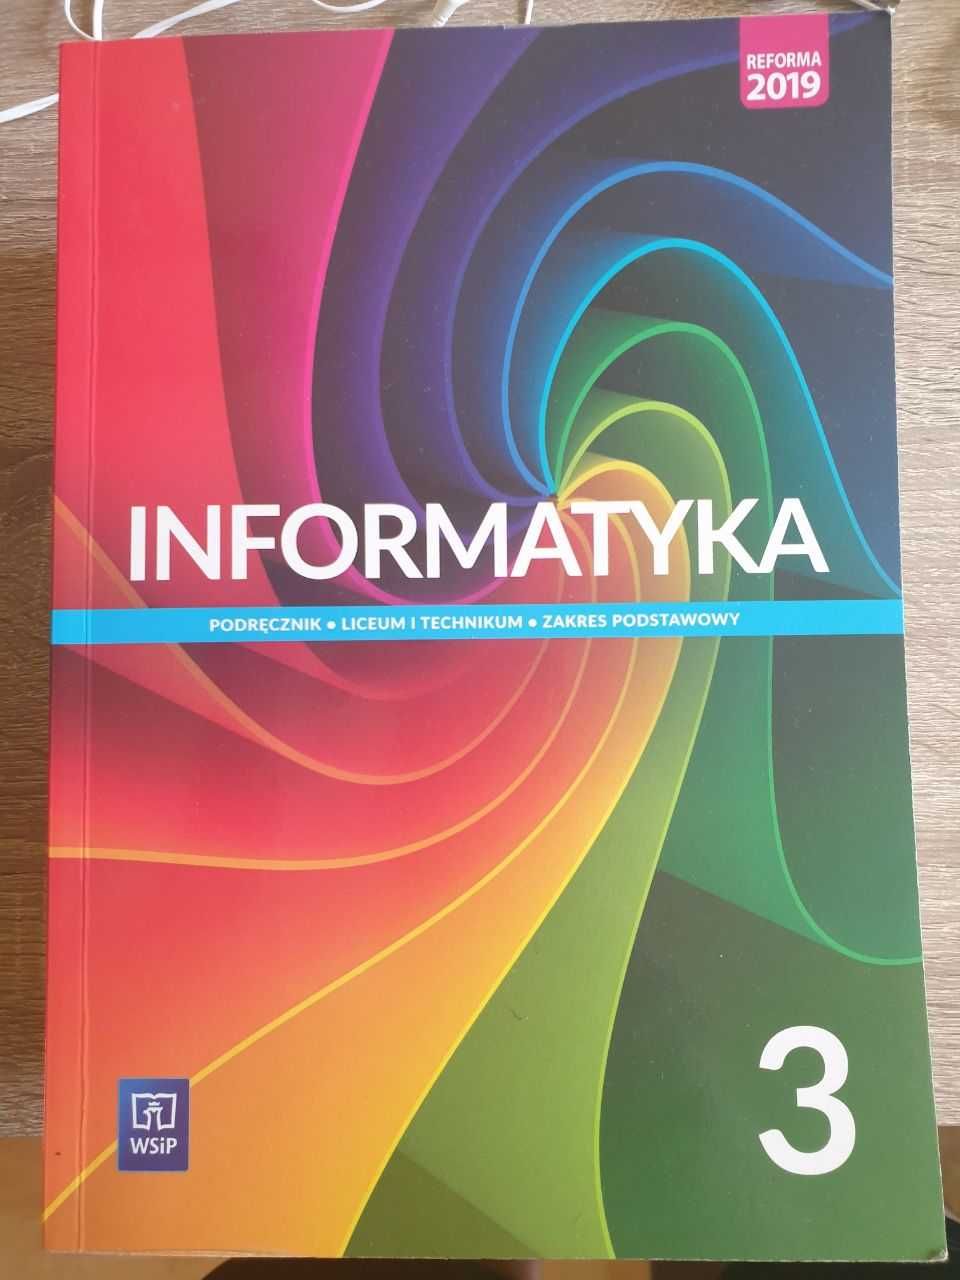 Podręcznik Informatyka 3 WSIP